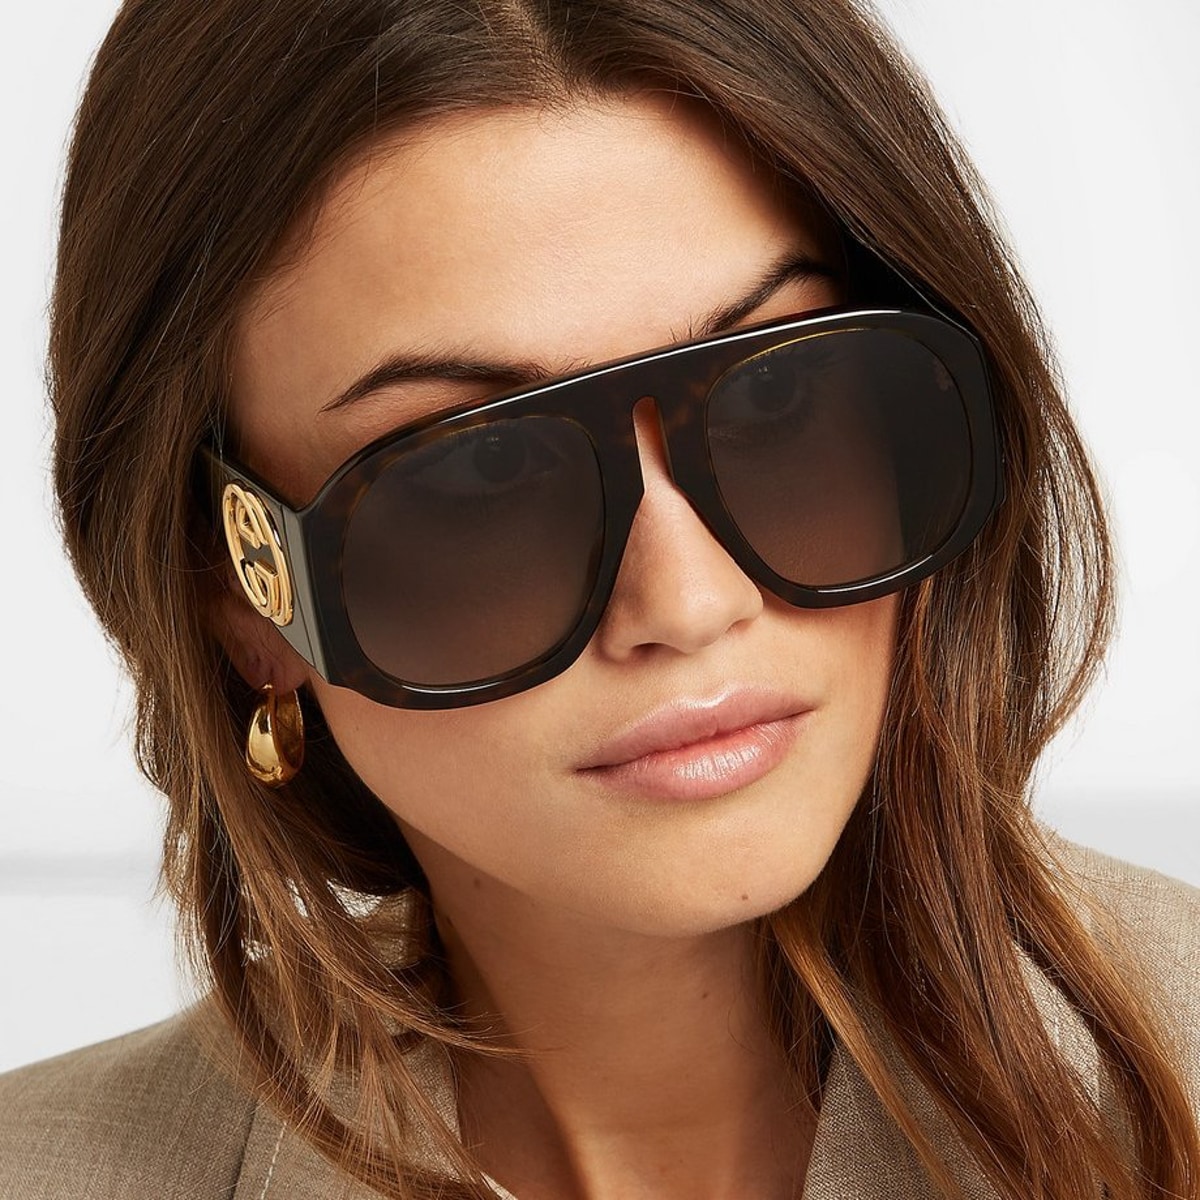 Женщина в больших квадратных солнцезащитных очках с золотым логотипом на дужке, в сером пиджаке, видна половина лица, крупный план.